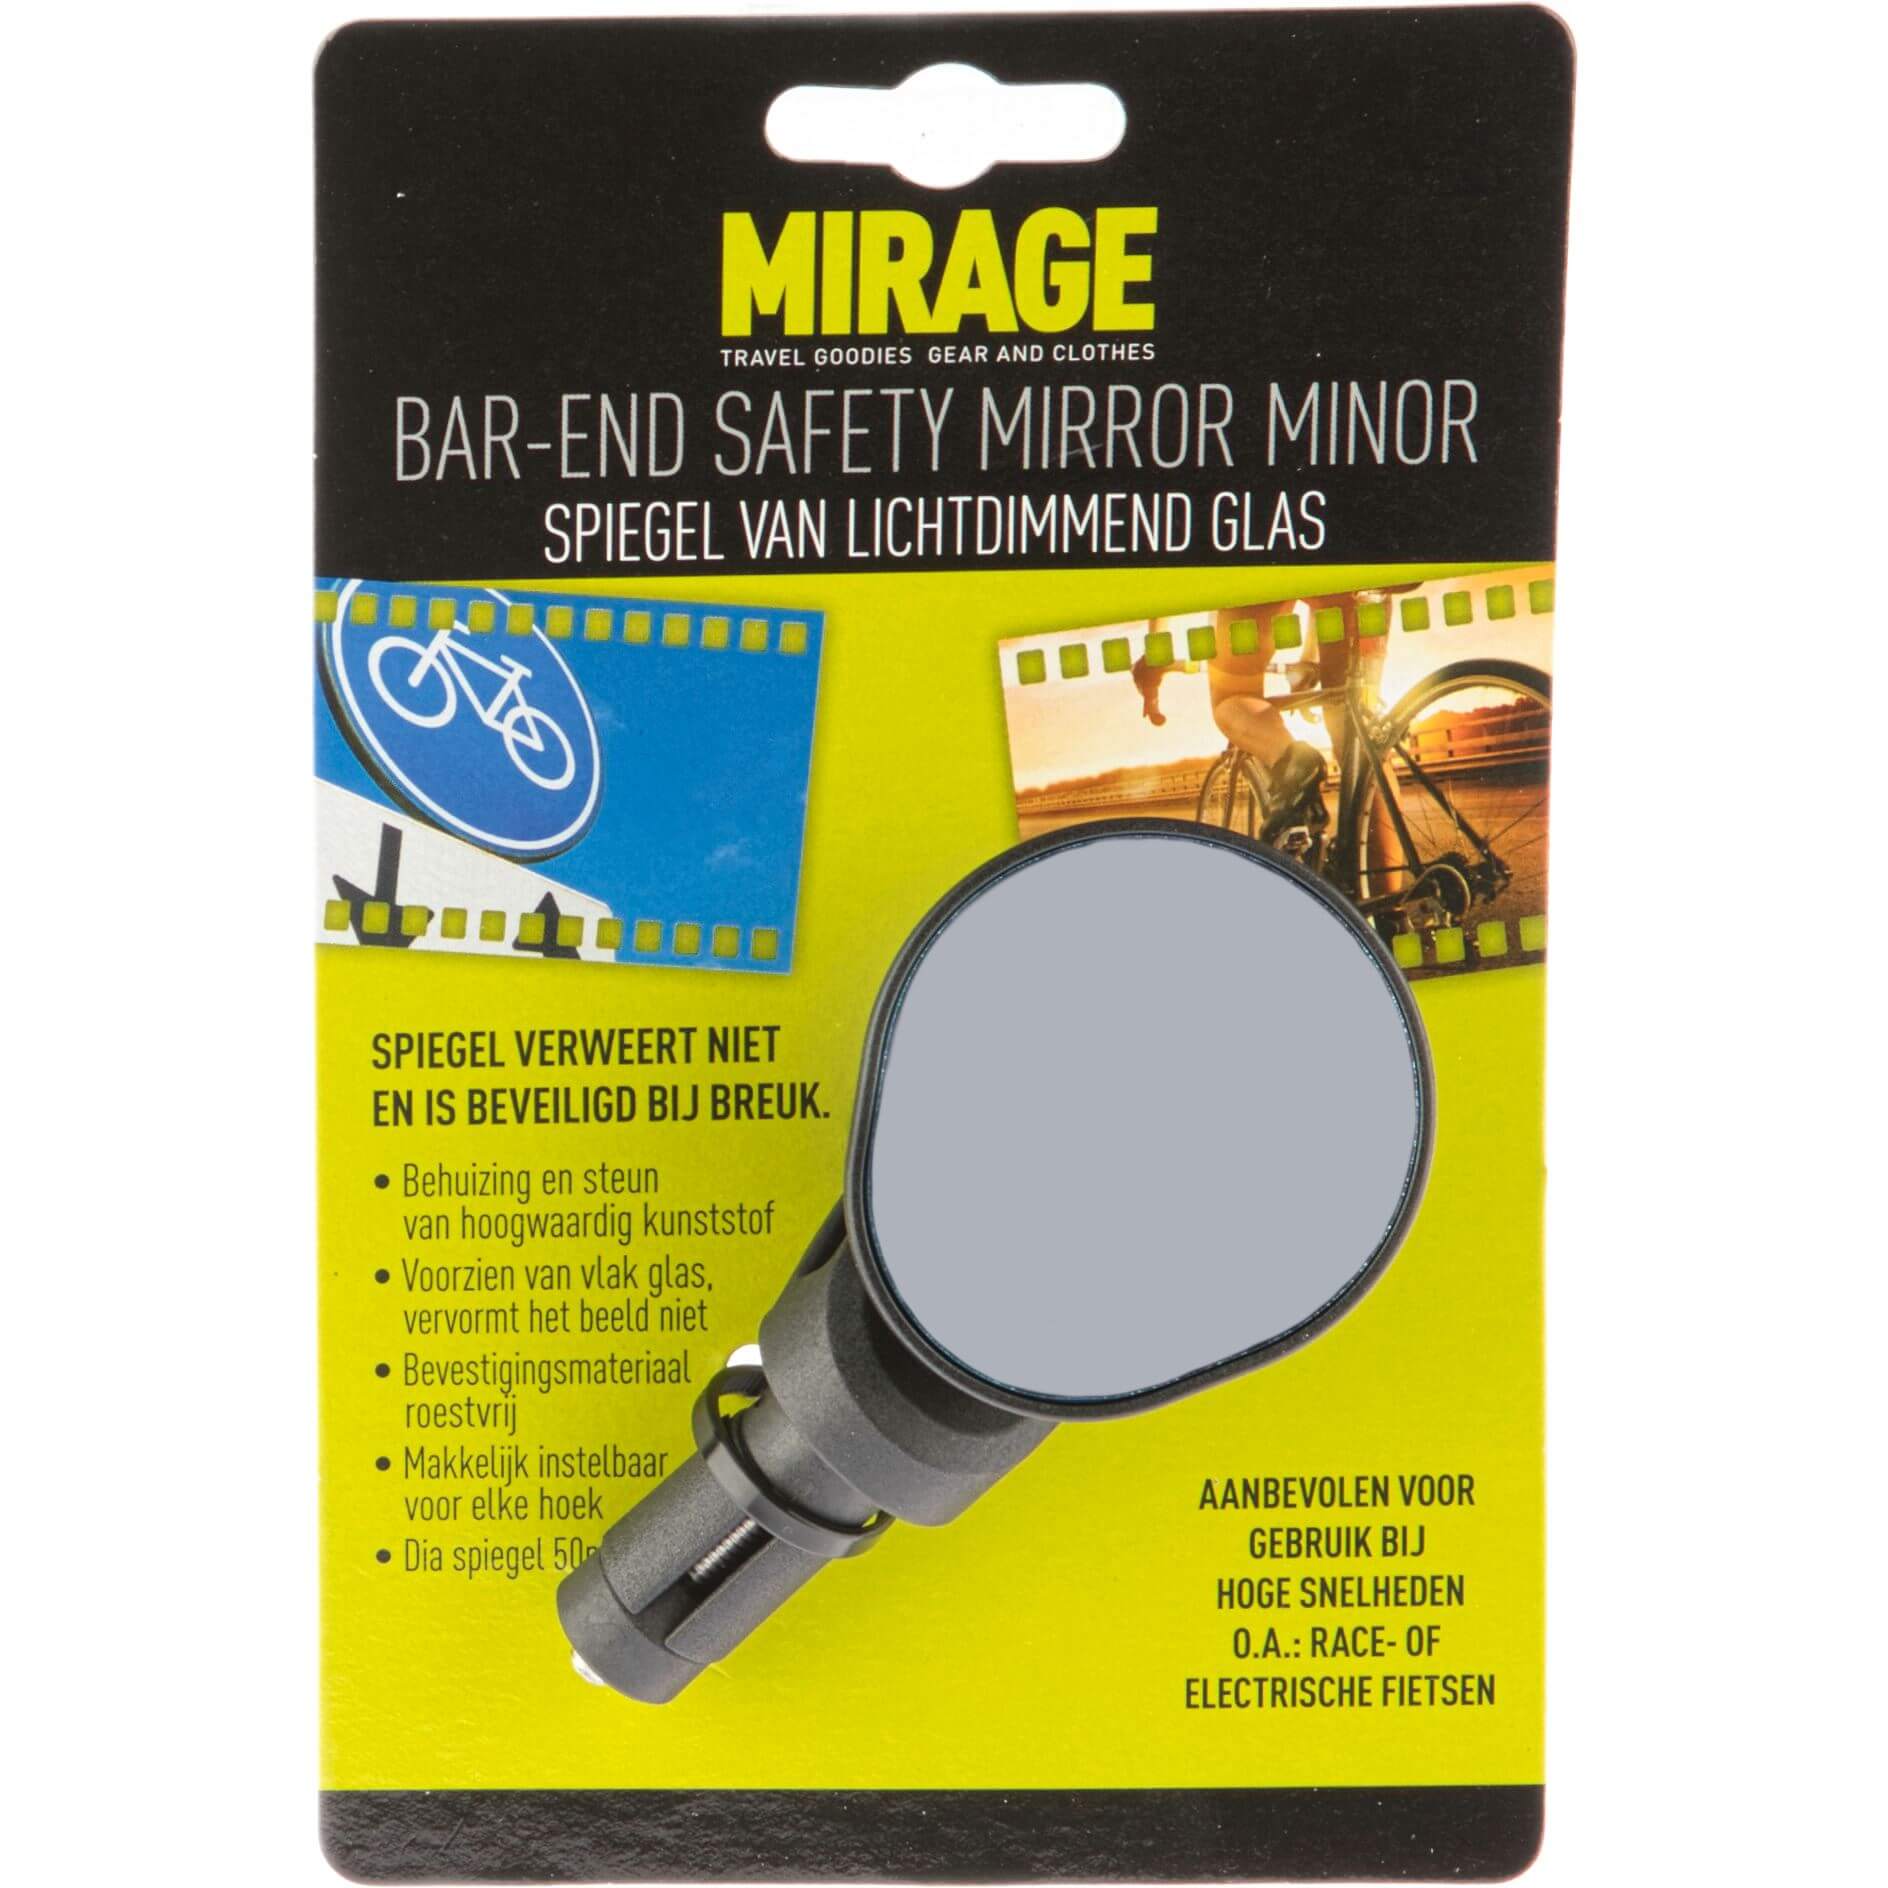 Minor spiegel bar-end